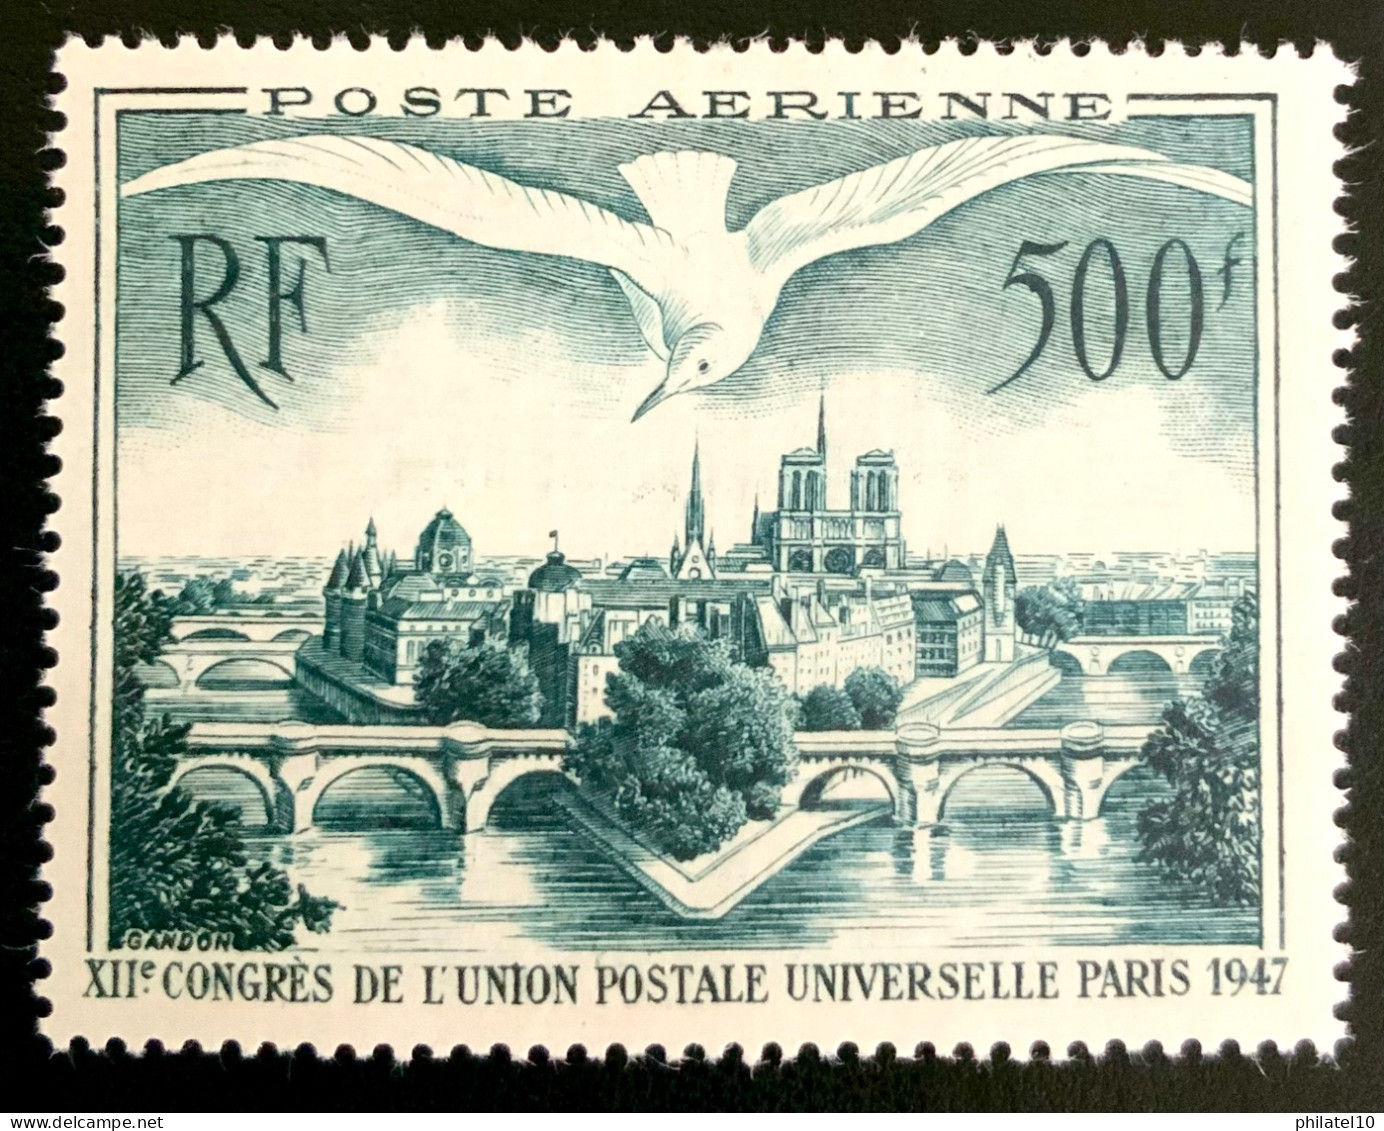 1947 FRANCE N 20 - POSTE AERIENNE - CONGRÈS DE L’UNION POSTALE UNIVERSELLE PARIS 1947 - NEUF** - 1927-1959 Mint/hinged